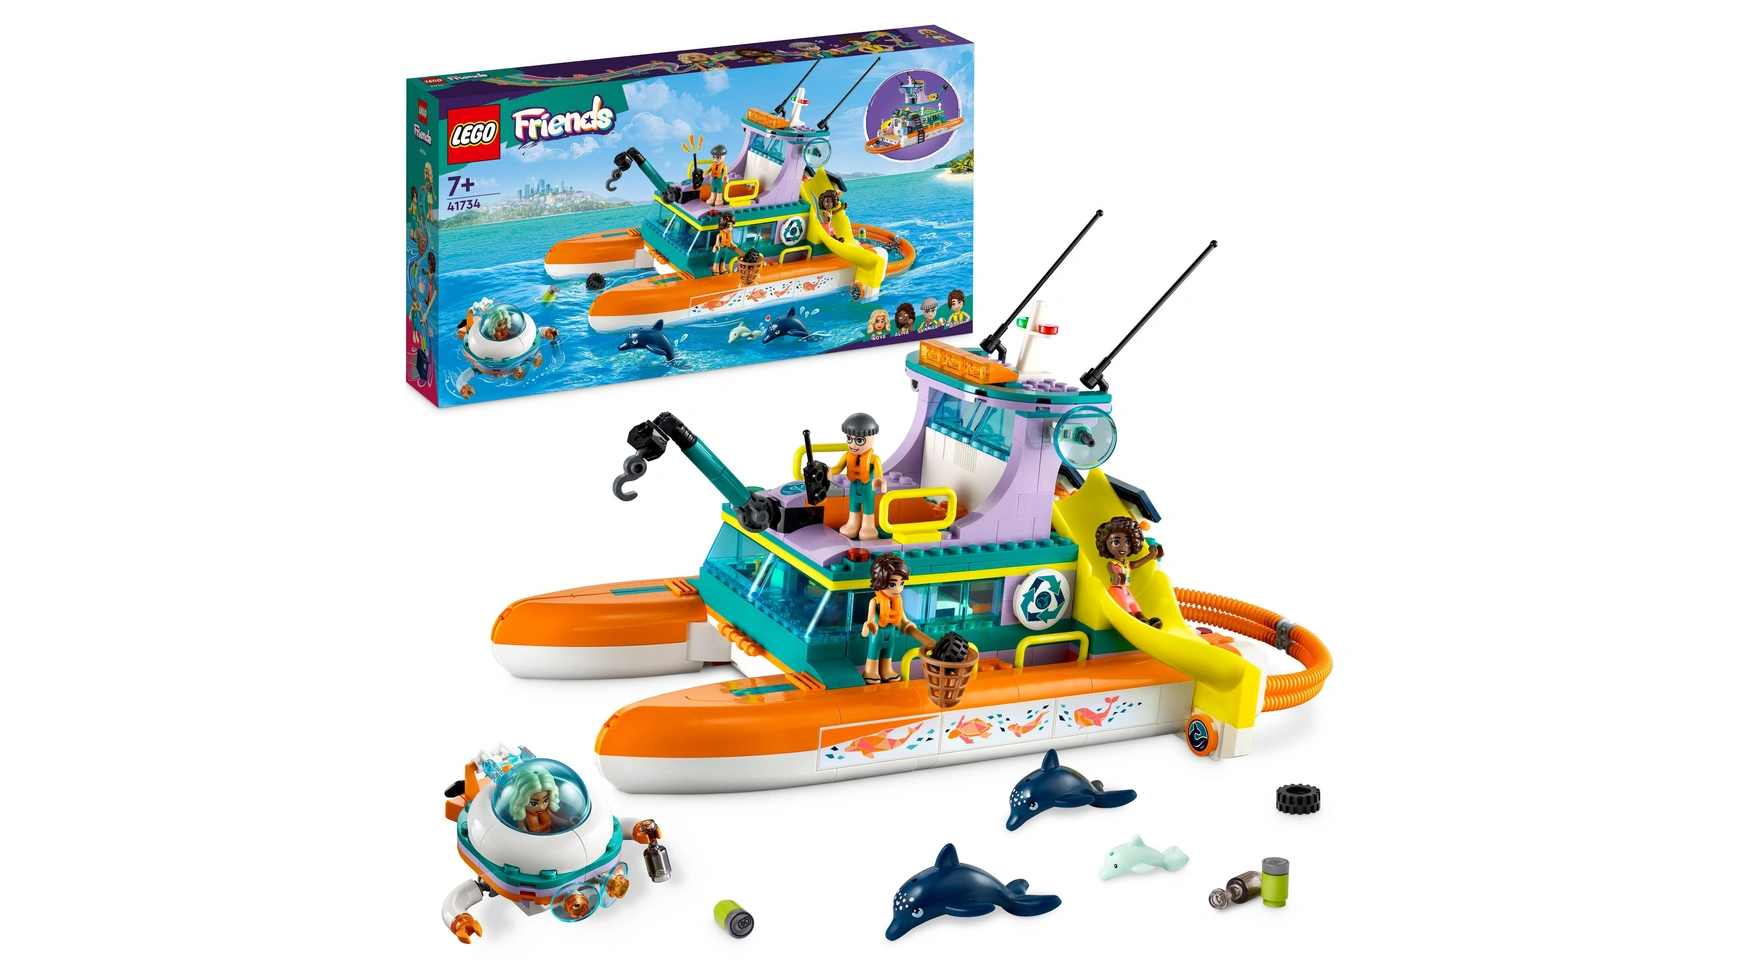 Lego Friends Набор Морской спасательный катер, игрушка с животными для детей конструктор lego friends 41752 морской спасательный самолет